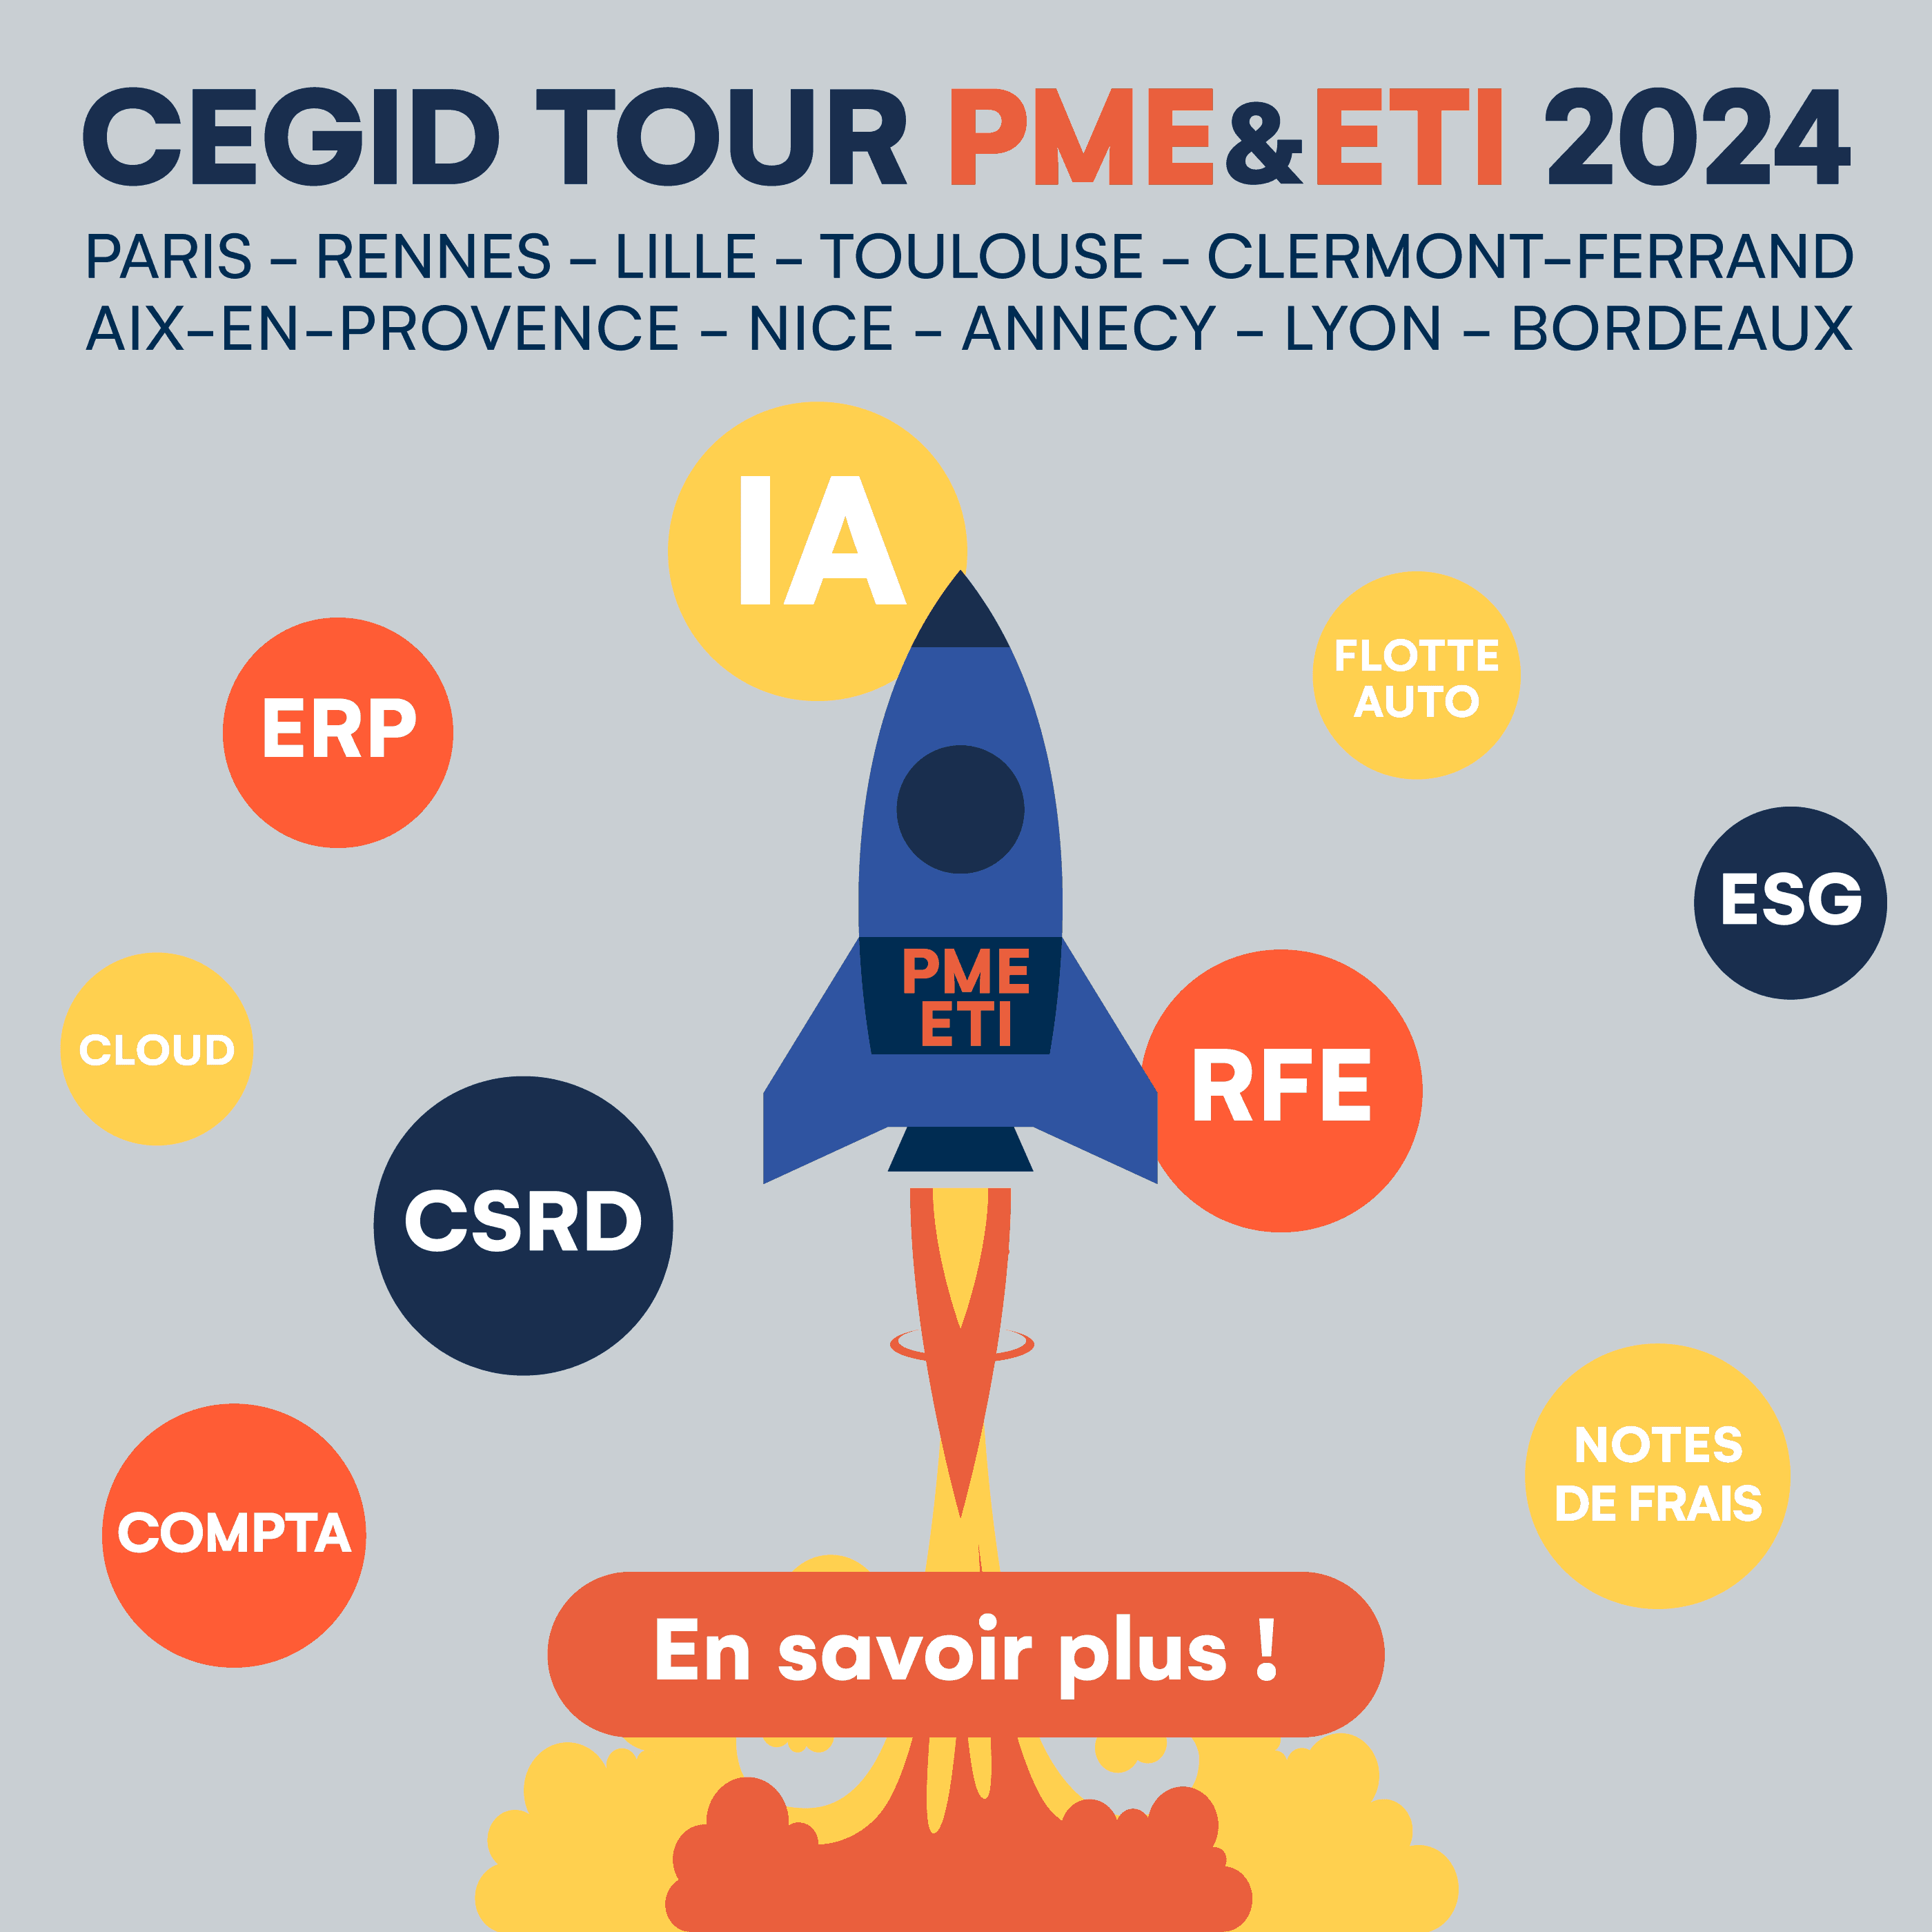 Cegid Tour PME & ETI 2024